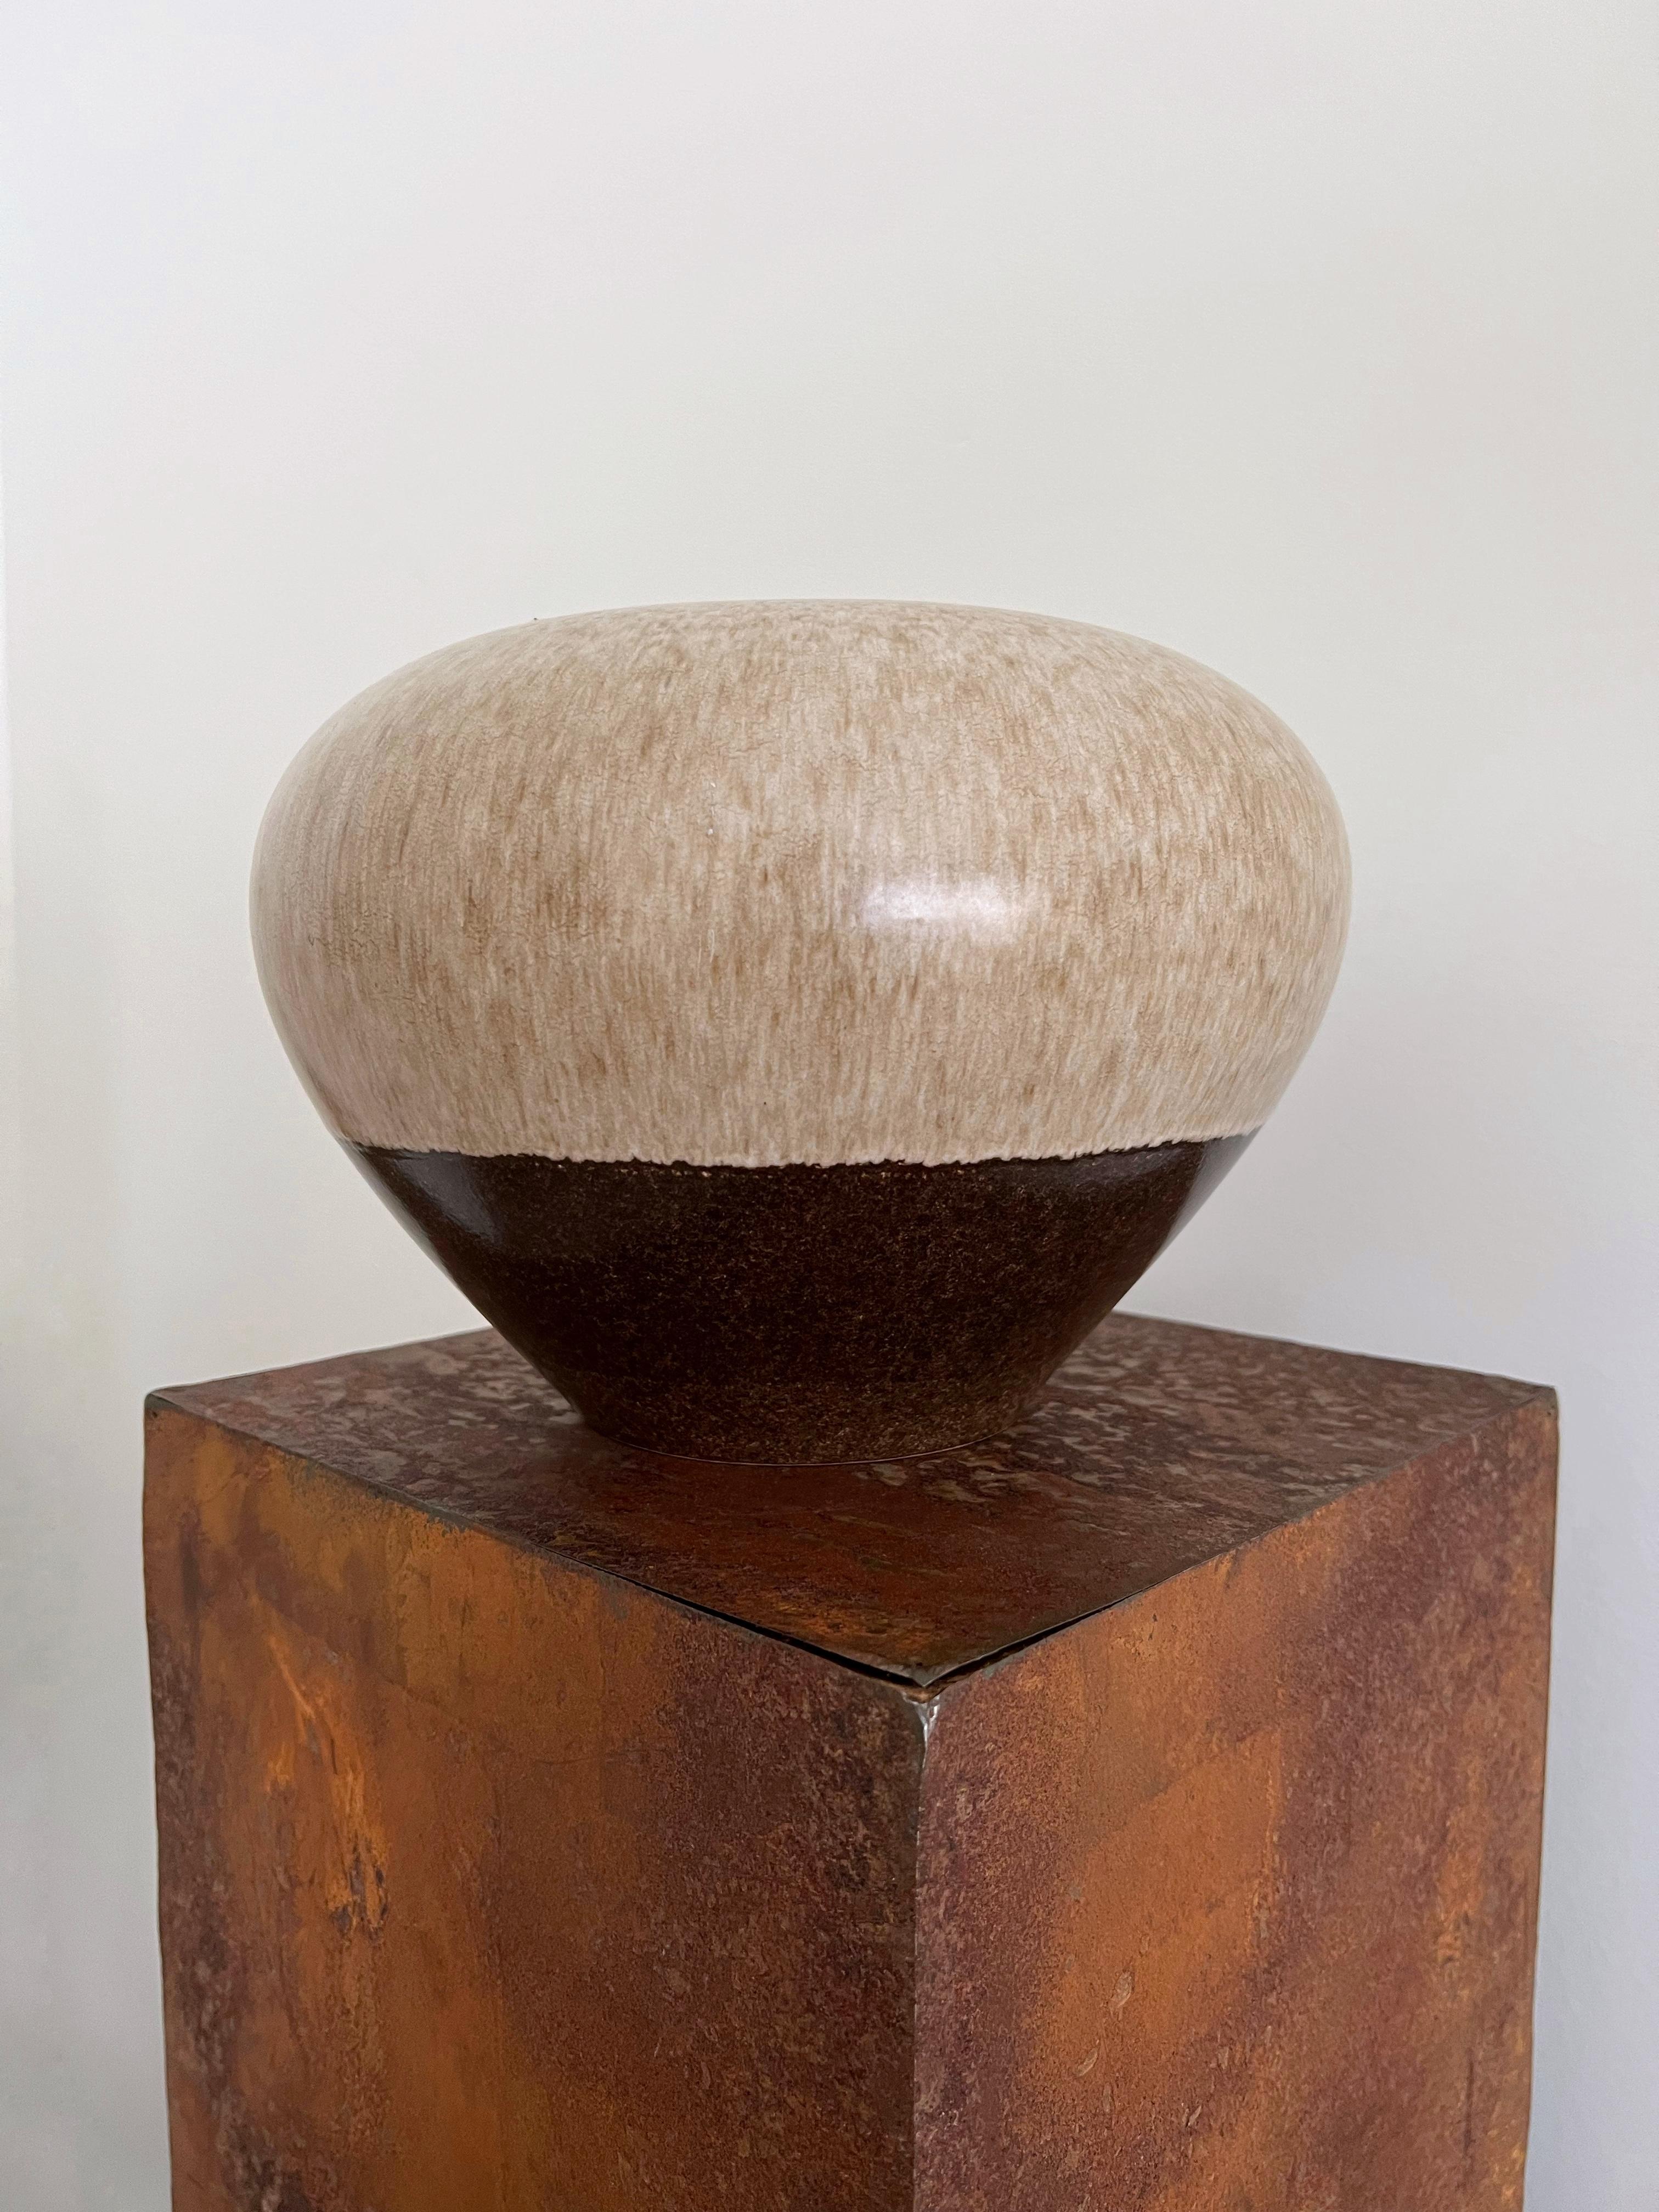 Keramikvase von Alvino Bagni für Raymor in schönen Braun-, Beige- und Erdtönen. Organisch geformt und wunderschön gearbeitet, passt dieses Stück in praktisch jede Einrichtung. Die Vase ist in einem sehr guten Vintage-Zustand und weist wenig bis